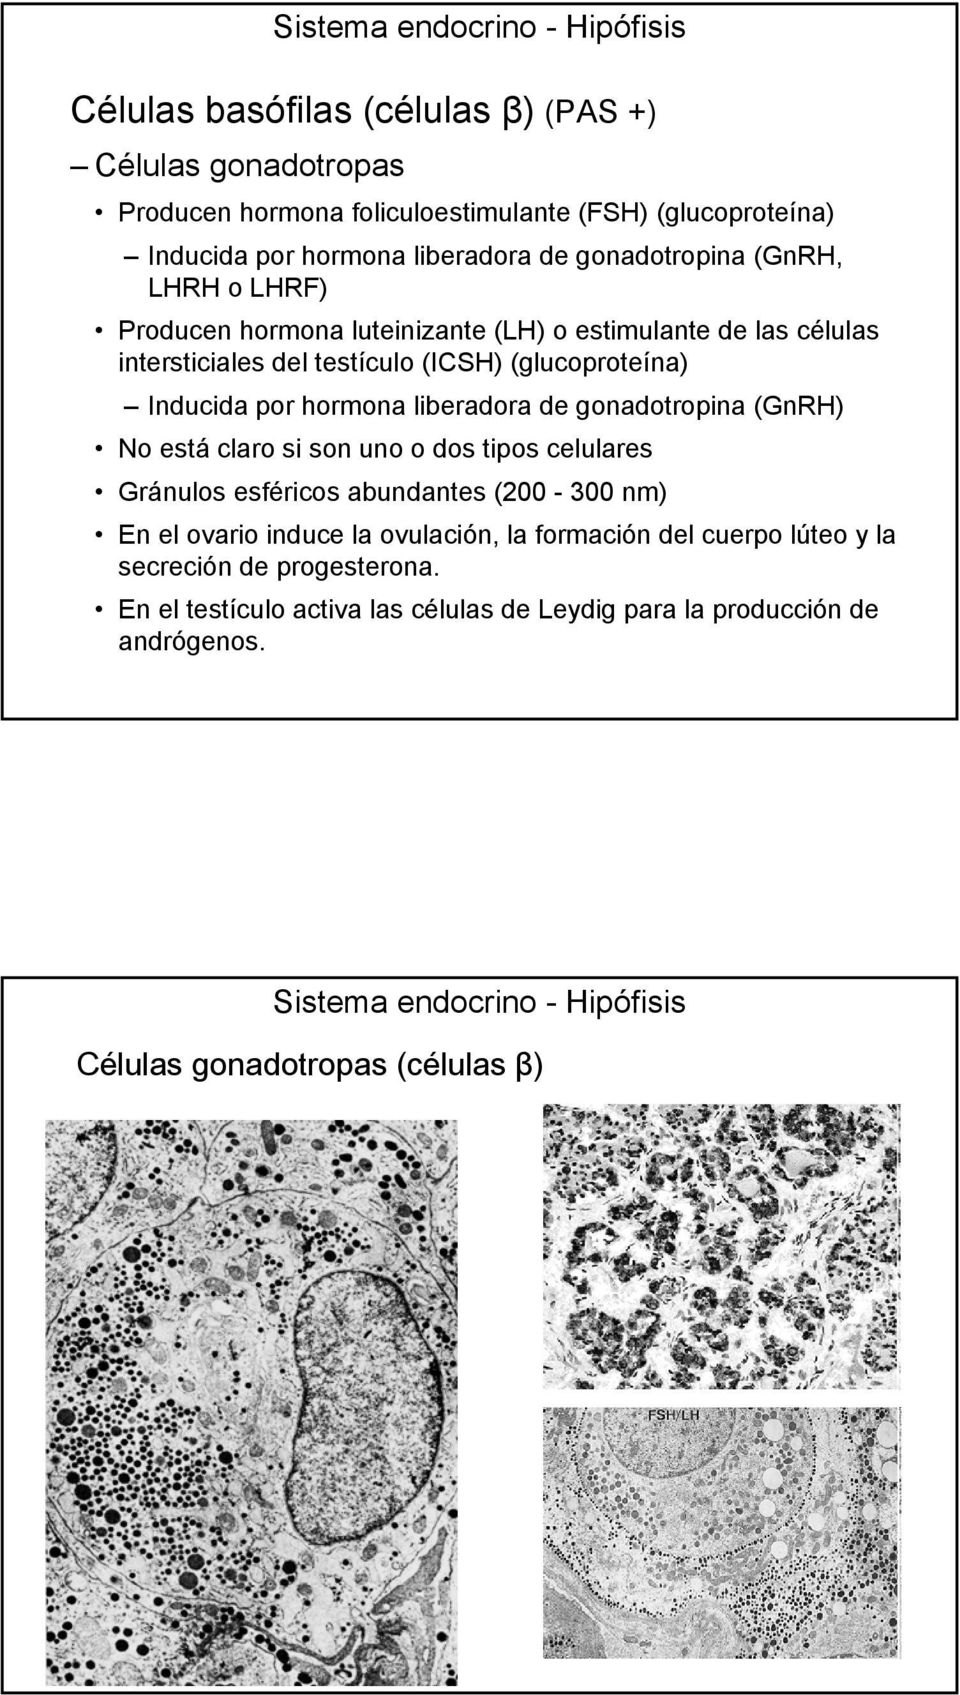 hormona liberadora de gonadotropina (GnRH) No está claro si son uno o dos tipos celulares Gránulos esféricos abundantes (200-300 nm) En el ovario induce la